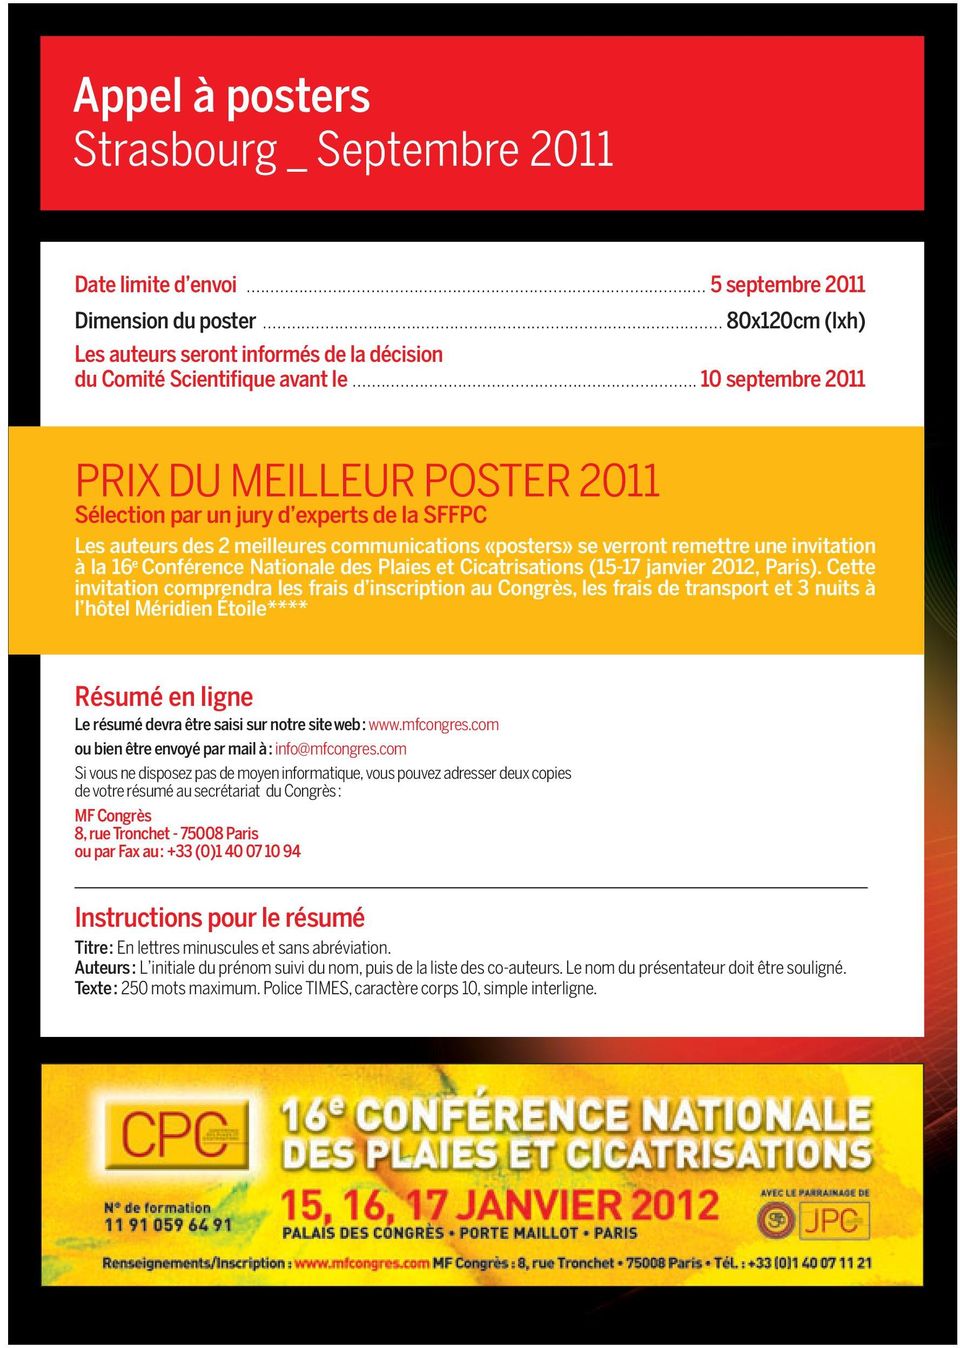 Conférence Nationale des Plaies et Cicatrisations (15-17 janvier 2012, Paris).